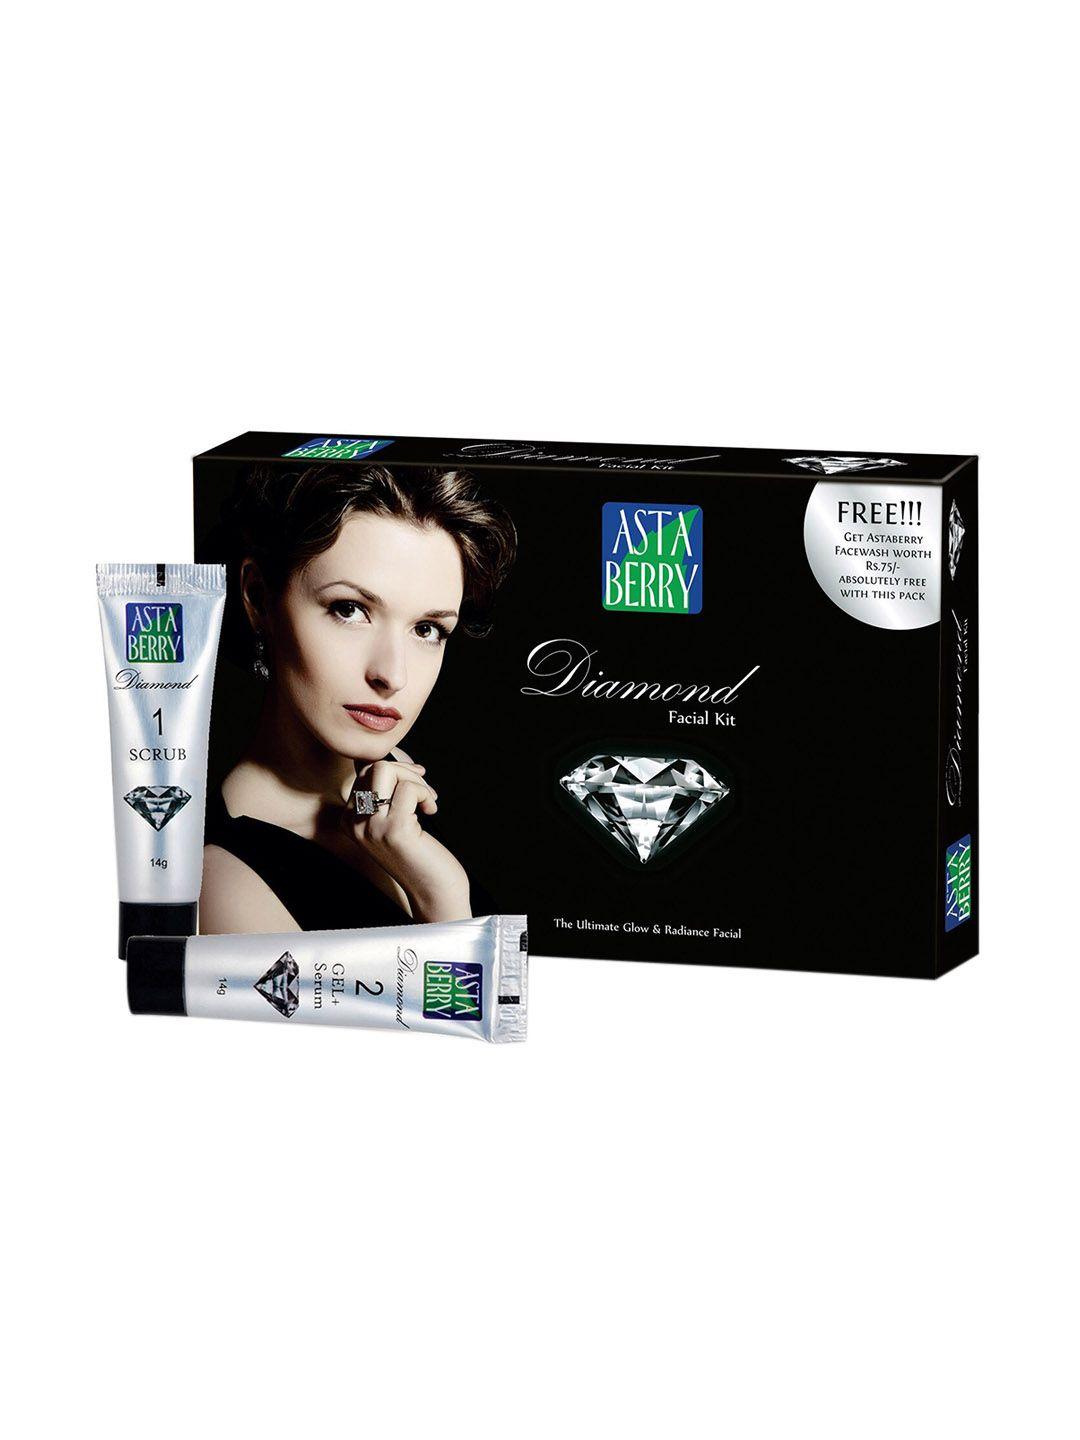 astaberry diamond mini facial kit 118ml with free facewash